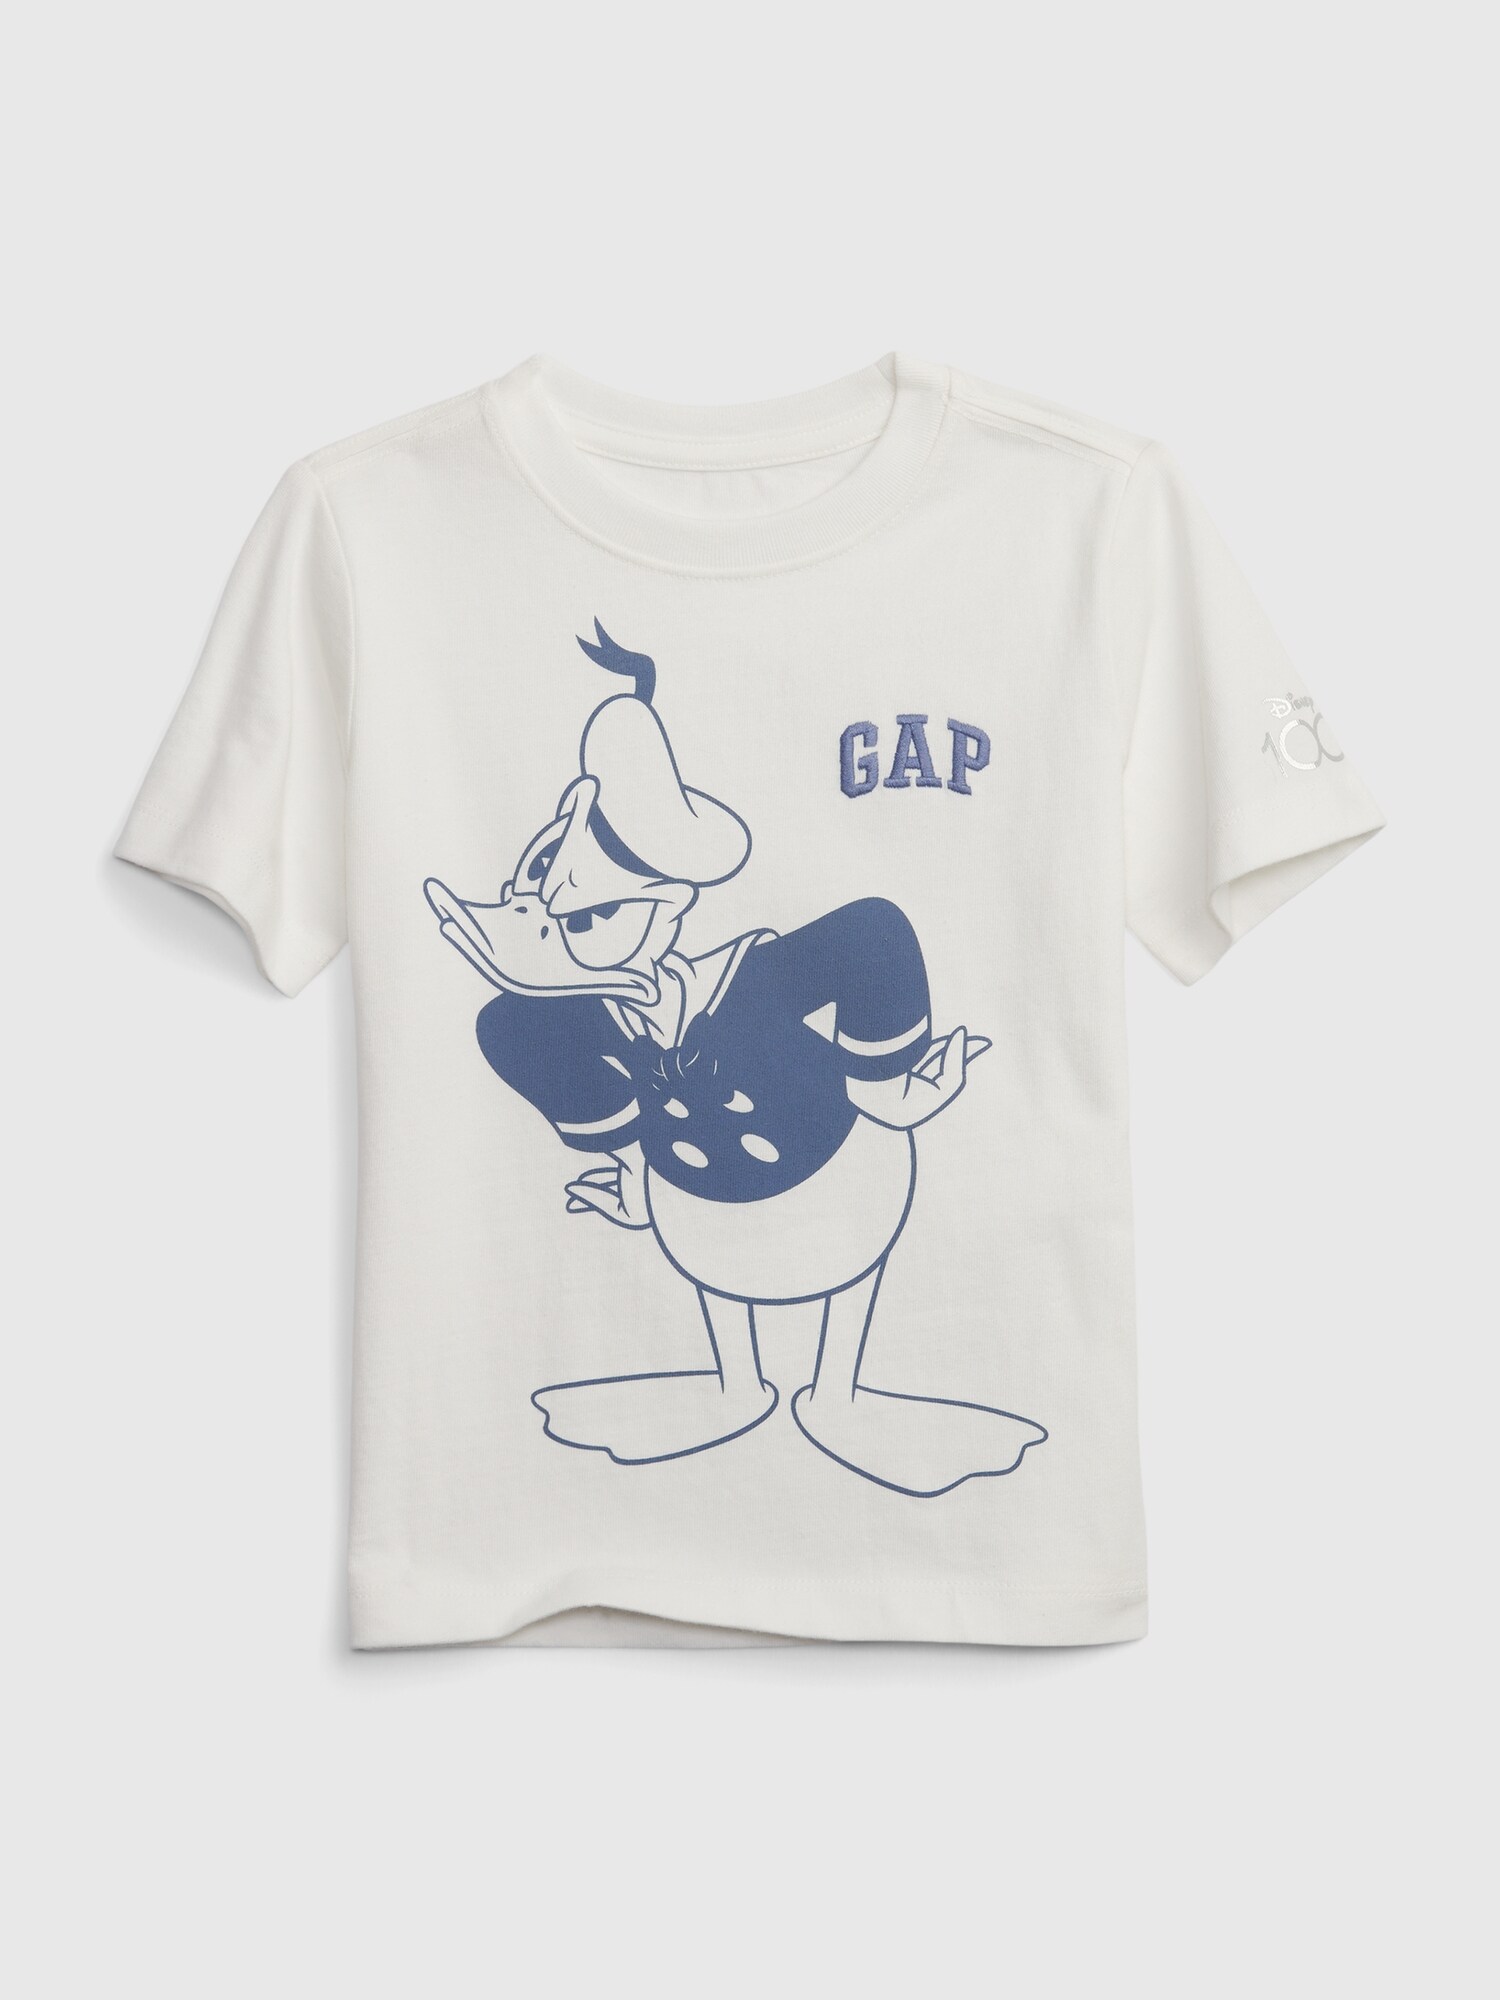 GAP ディズニーコレクション | Gap公式オンラインストア